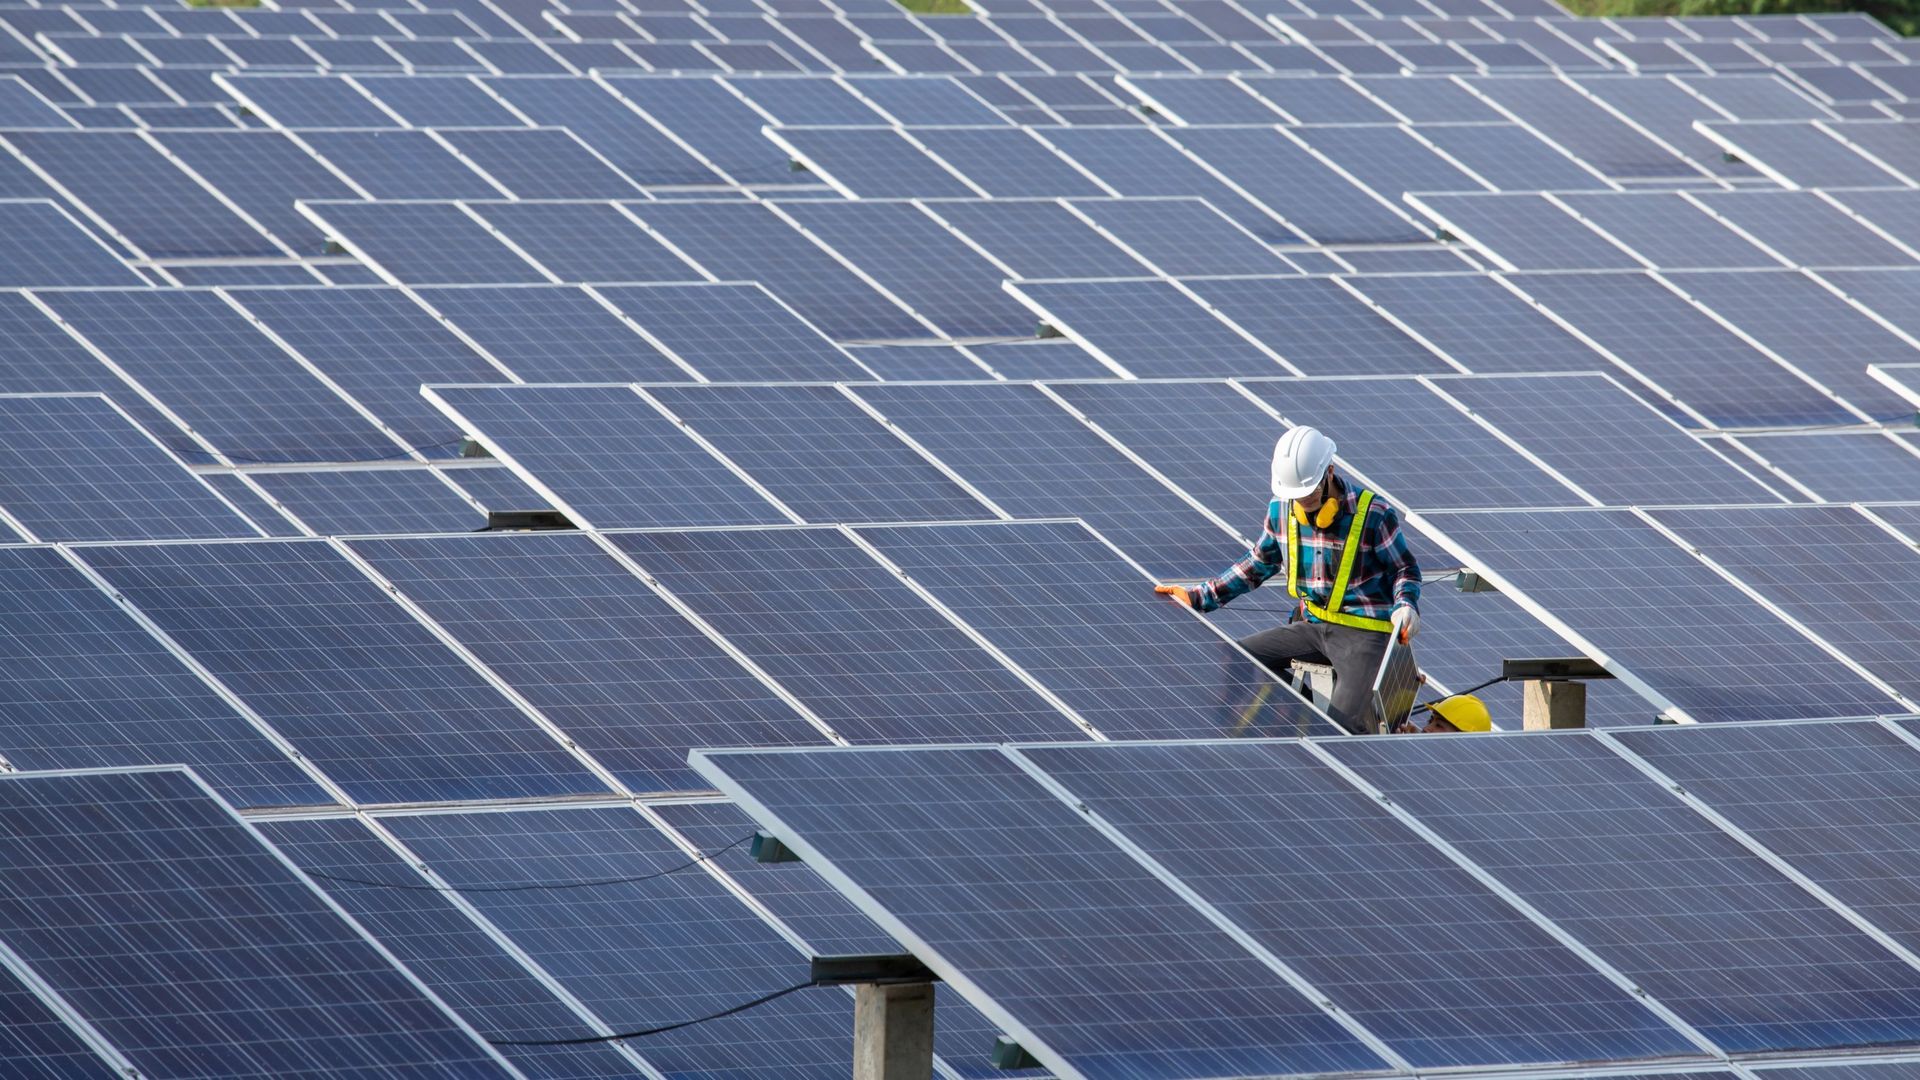 Le gouvernement flamand souhaite accroître de 40% la production photovoltaïque d'ici 2025